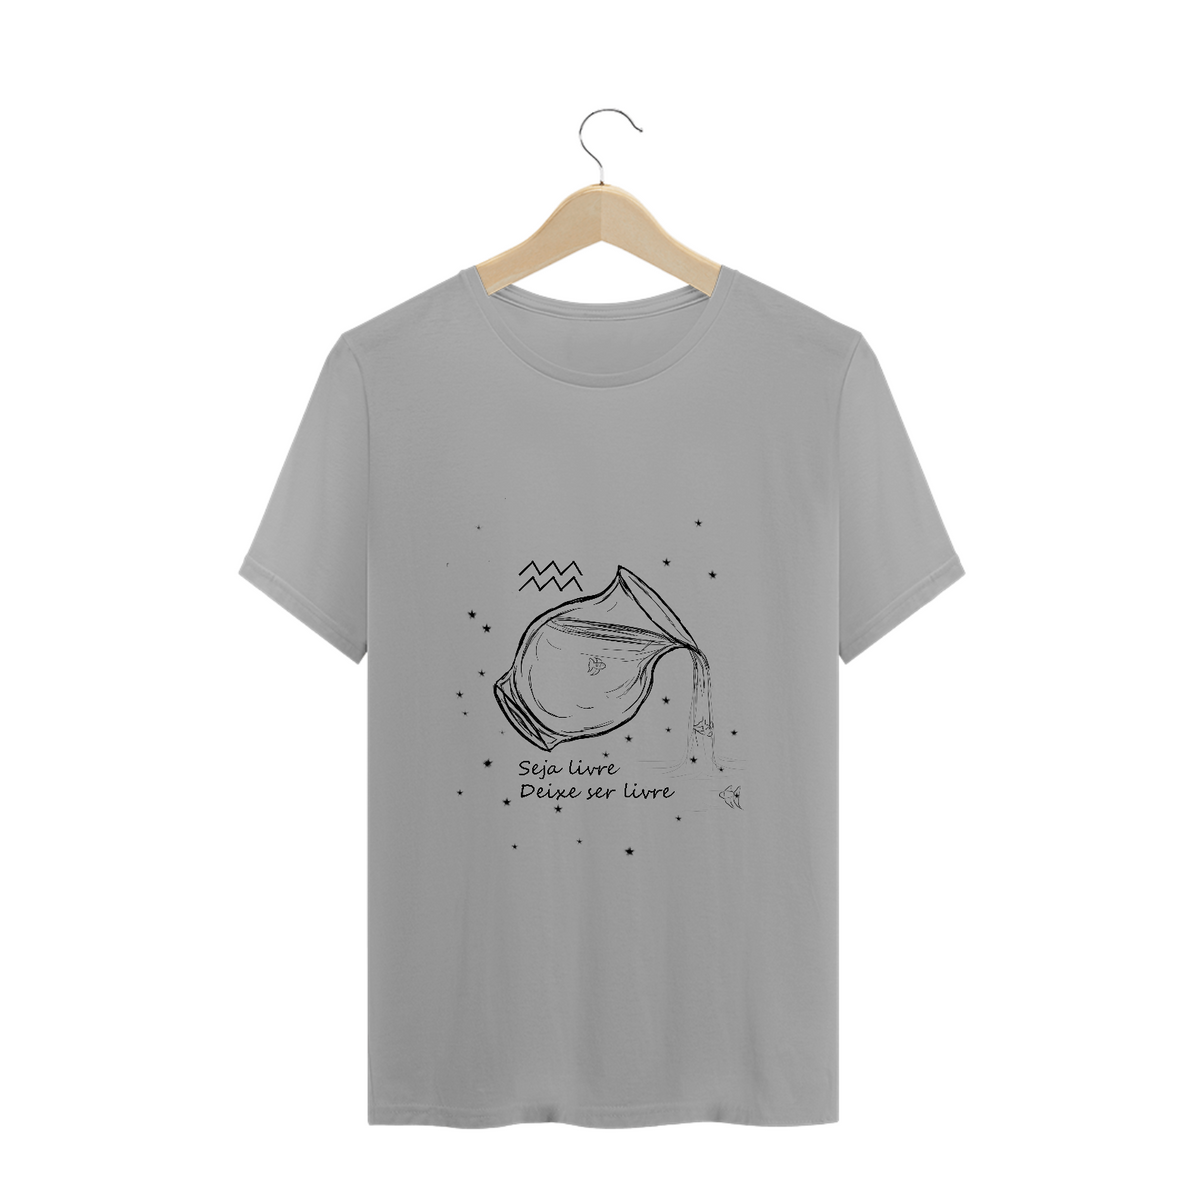 Nome do produto: Camiseta Unissex | Aquário | Seja livre, Deixe ser livre | P&B 